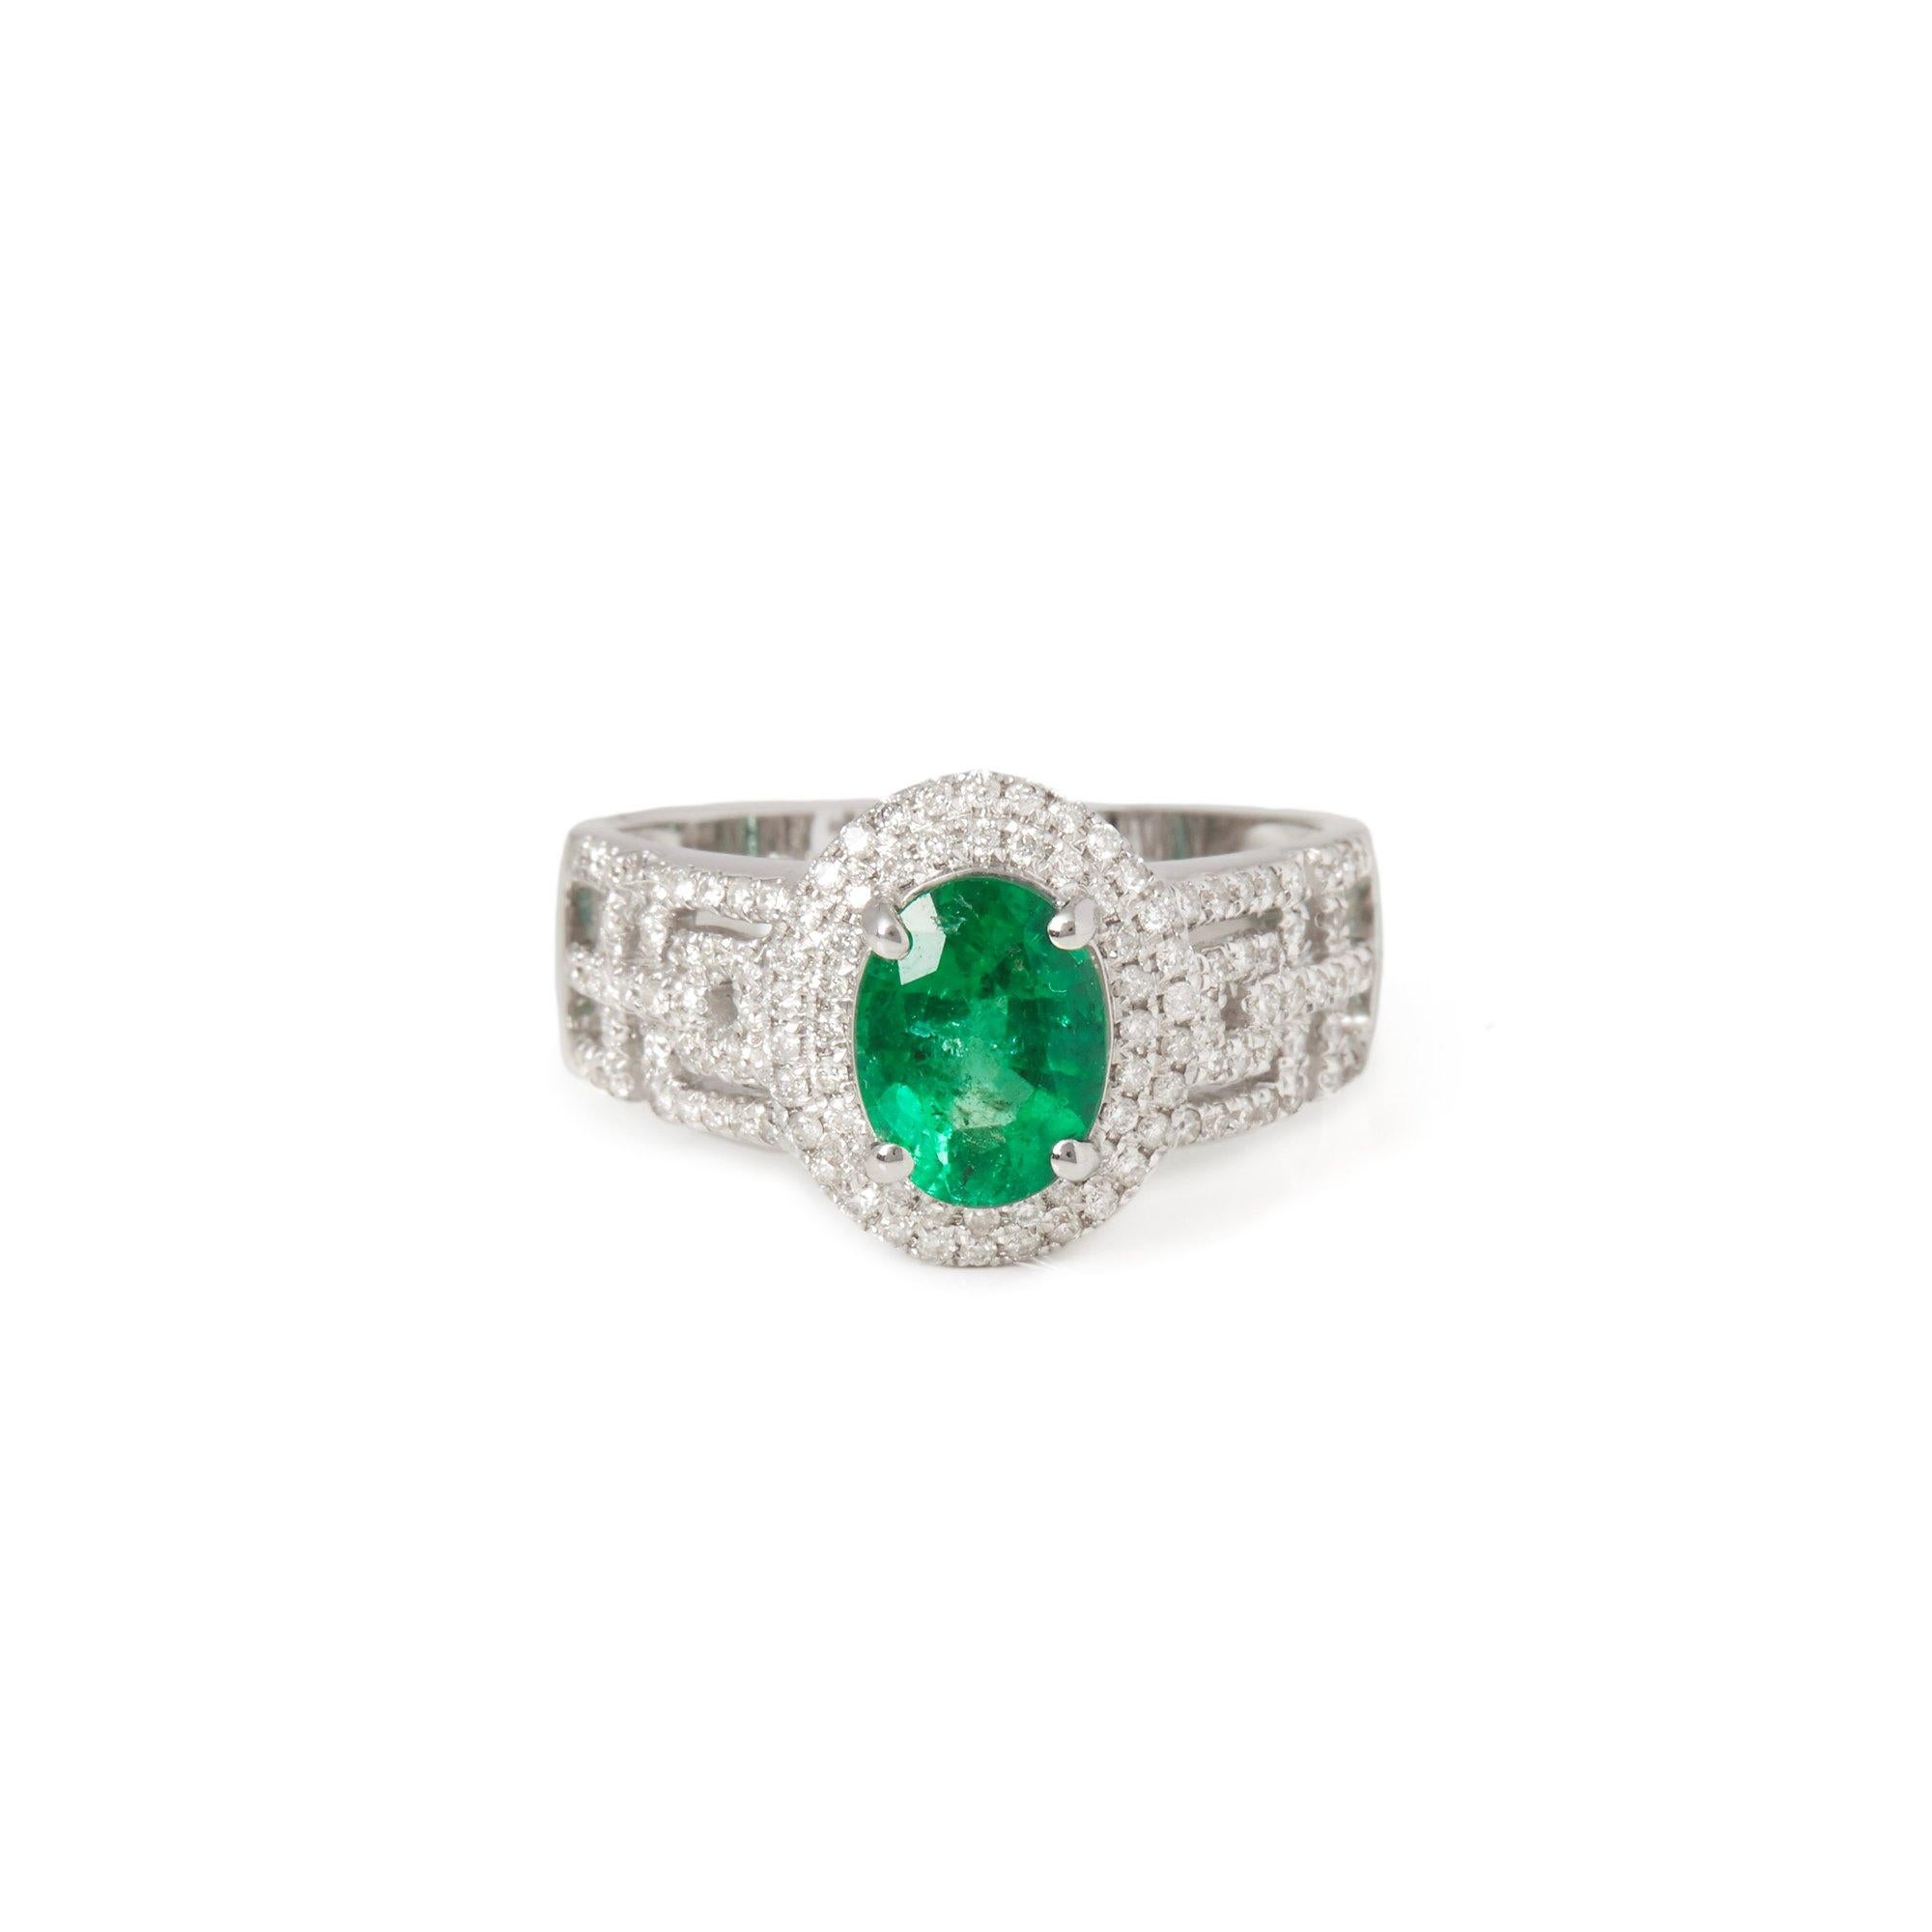 Dieser von David Jerome entworfene Ring stammt aus seiner Privatsammlung und enthält einen Smaragd im Ovalschliff mit einem Gesamtgewicht von 1,23 Karat, der in Sambia gewonnen wurde. Mit runden Diamanten im Brillantschliff von insgesamt 0,48 Karat